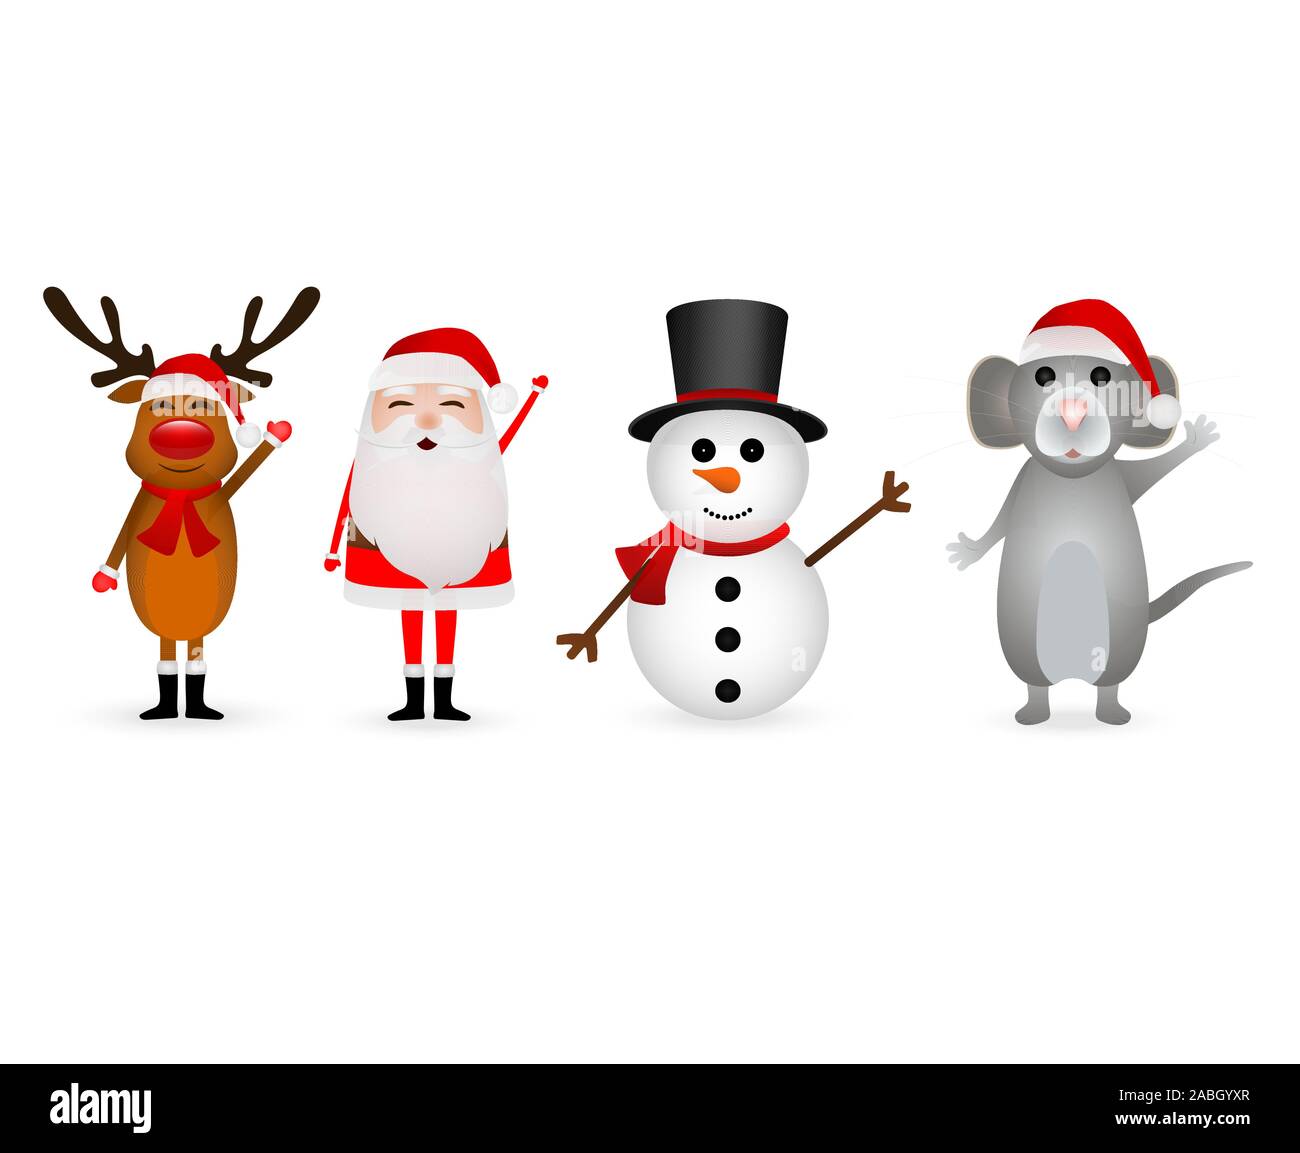 Weihnachtsmann, Weihnachten Rentier mit einem Schneemann und eine Maus auf einem weißen Stock Vektor